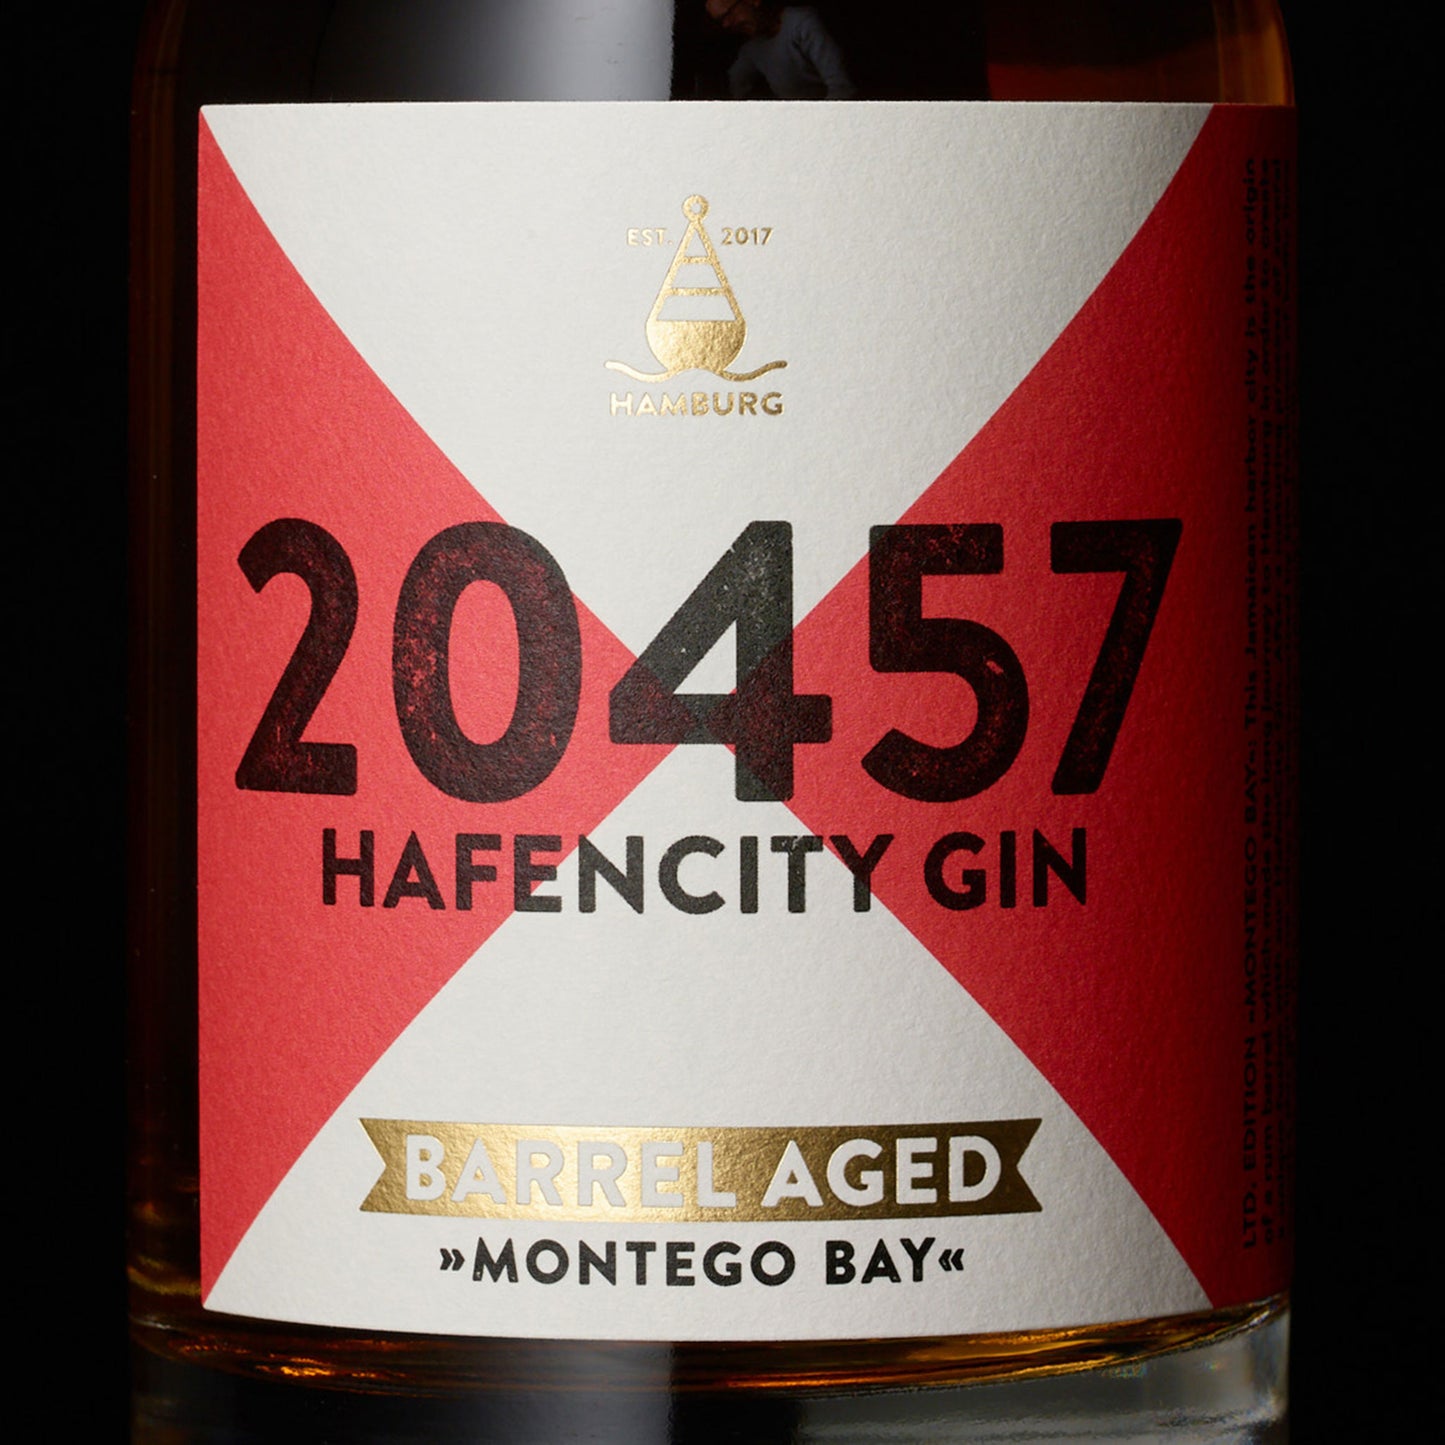 
                  
                    20457 Hafencity Gin Barrel Aged Montego Bay. Gereift in einem Jamaika Rum Fass. Etikett Limited Edition 0,5L Flasche
                  
                